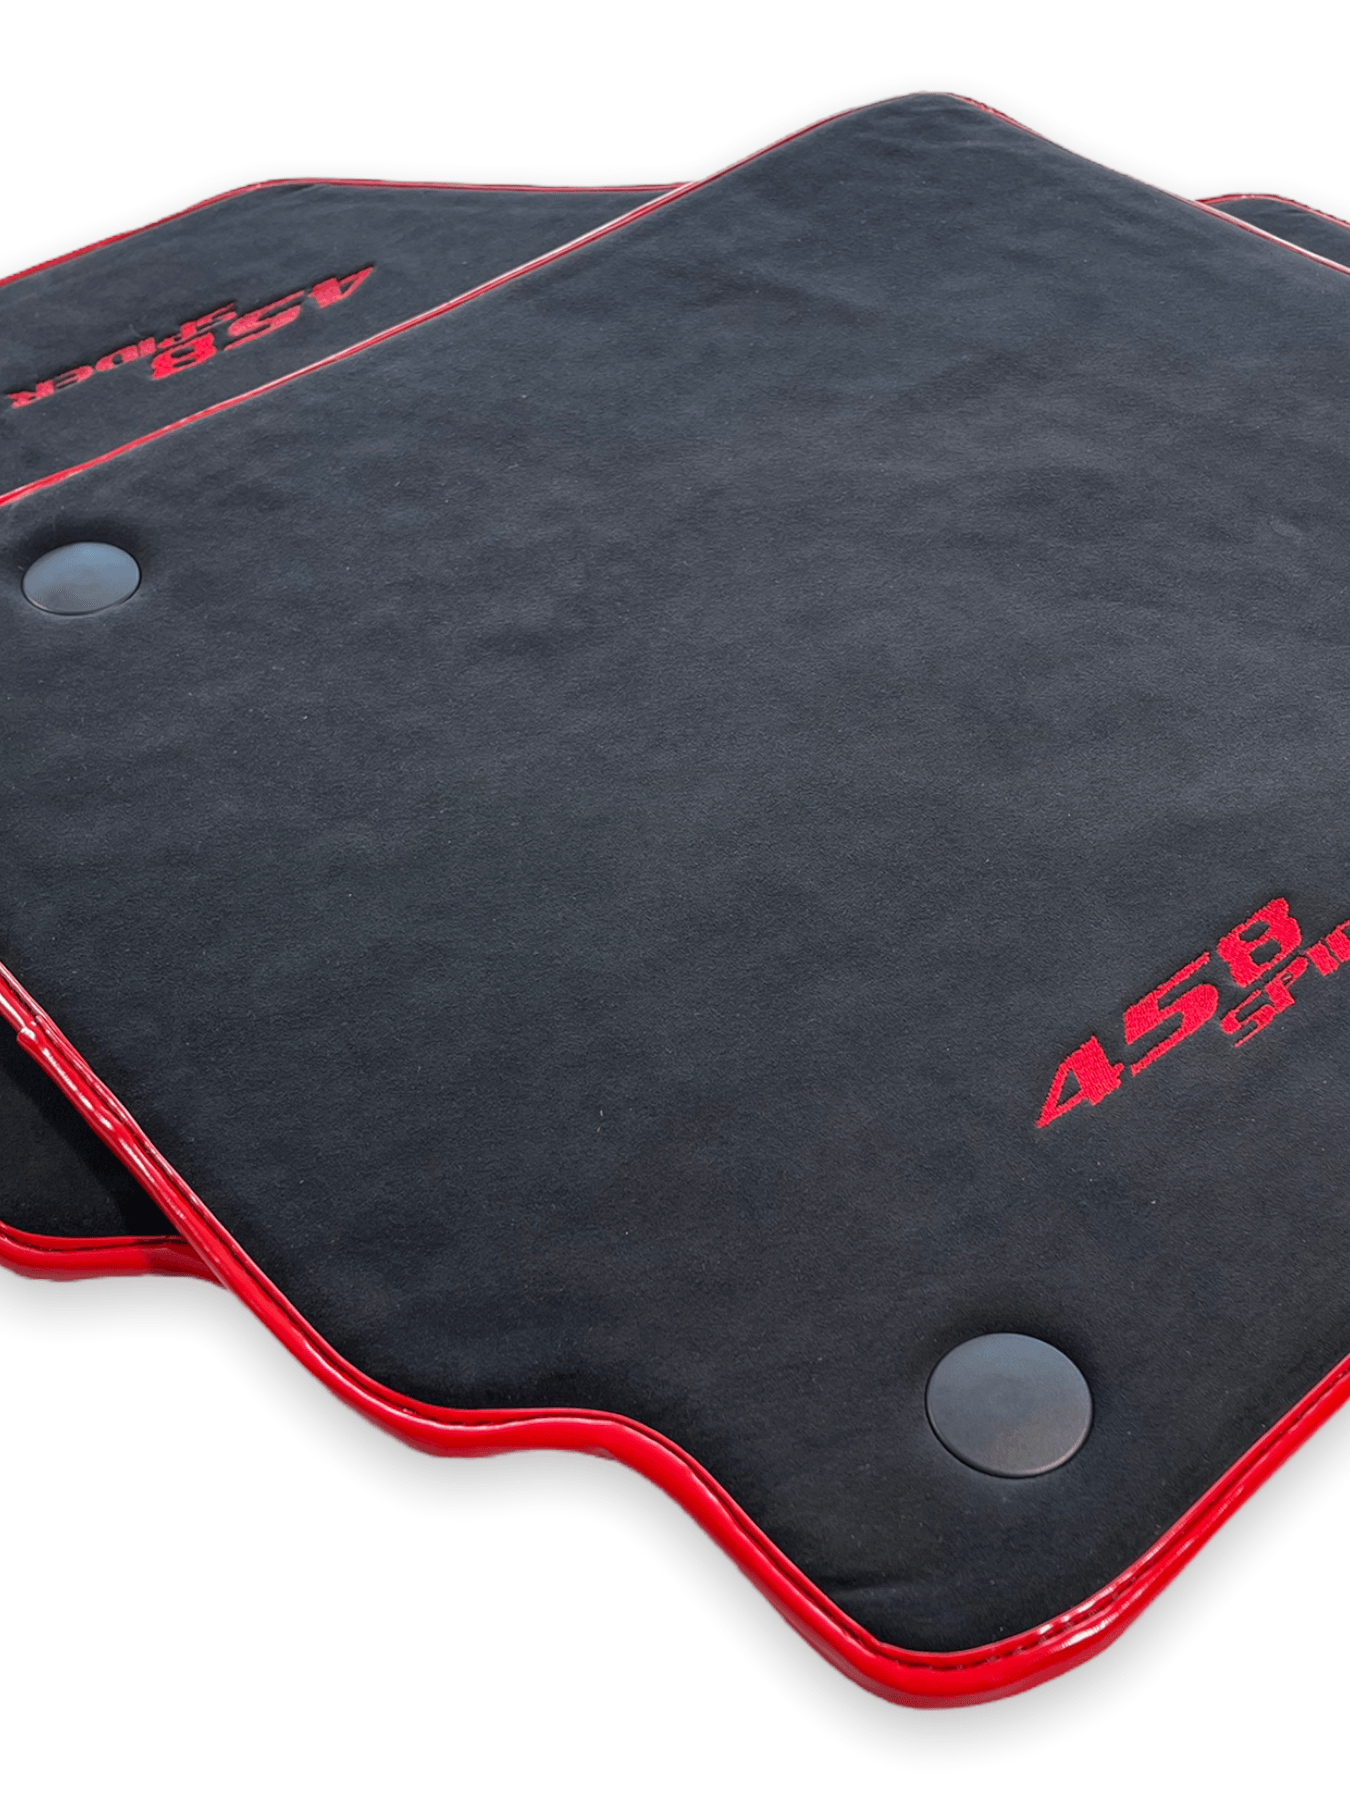 Floor Mats For Ferrari 458 Spider 2012-2015 Alcantara Leather Red Trim - AutoWin